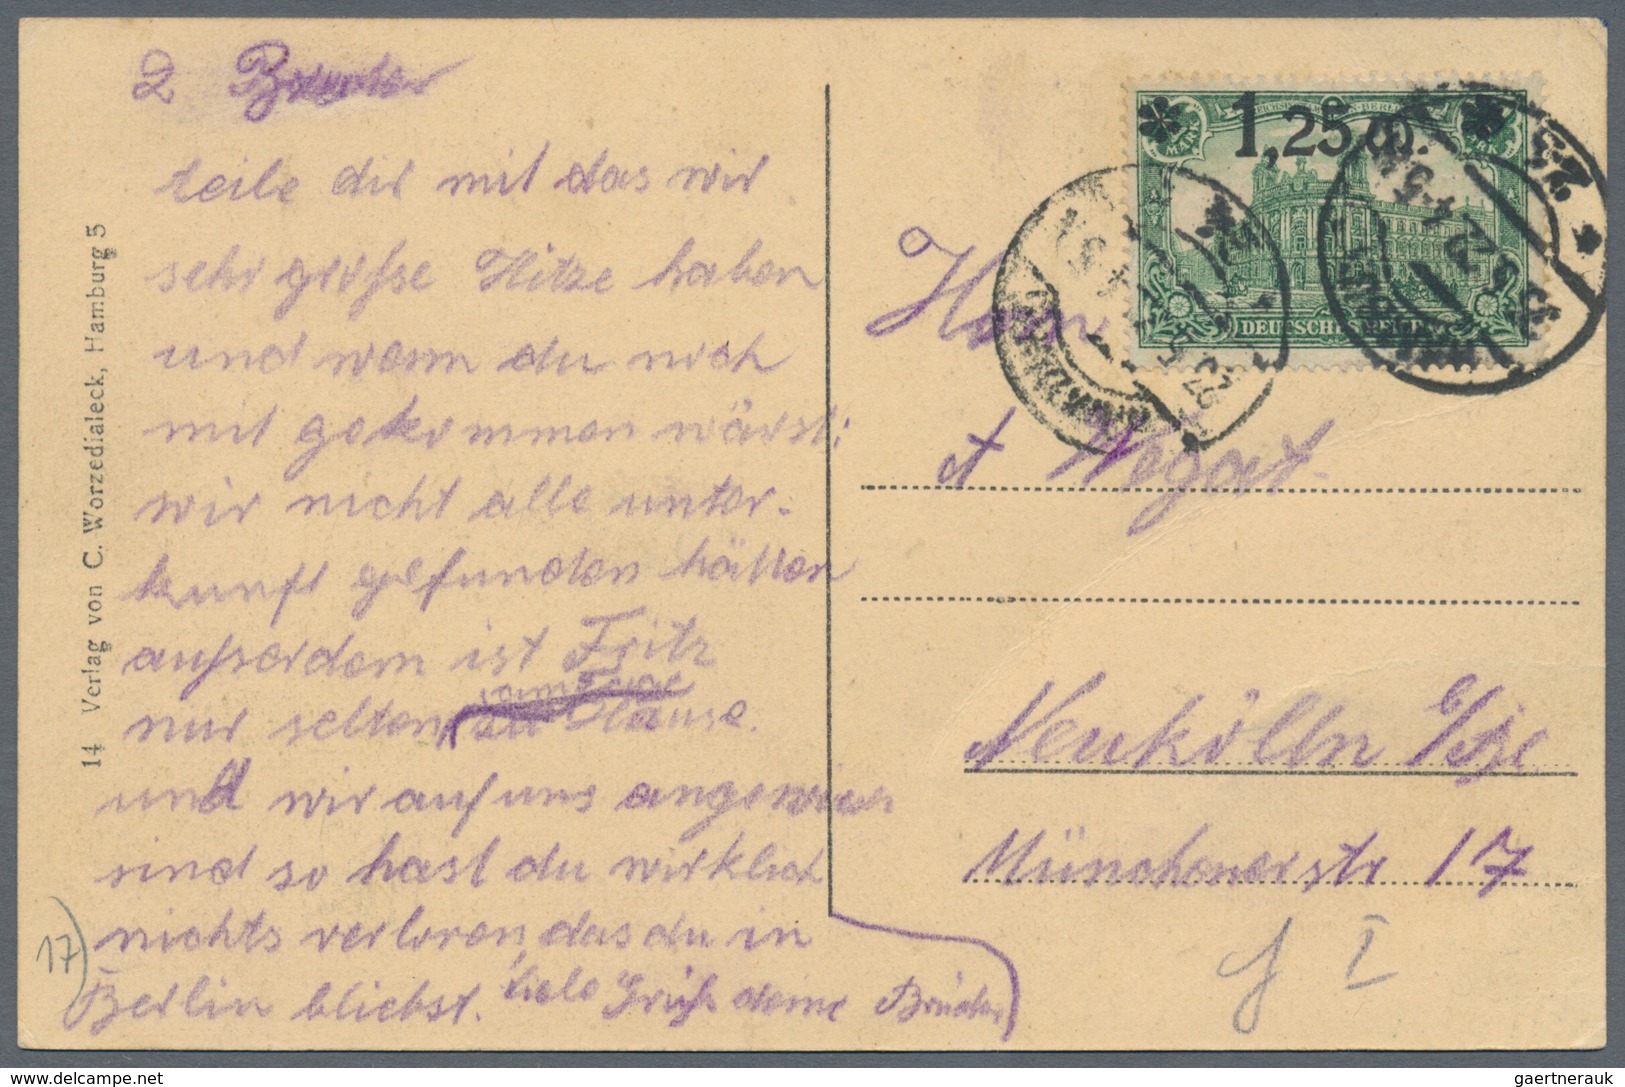 Deutsches Reich - Inflation: 1919/1923, vielseitiger Bestand von ca. 780 Briefen und Karten in guter